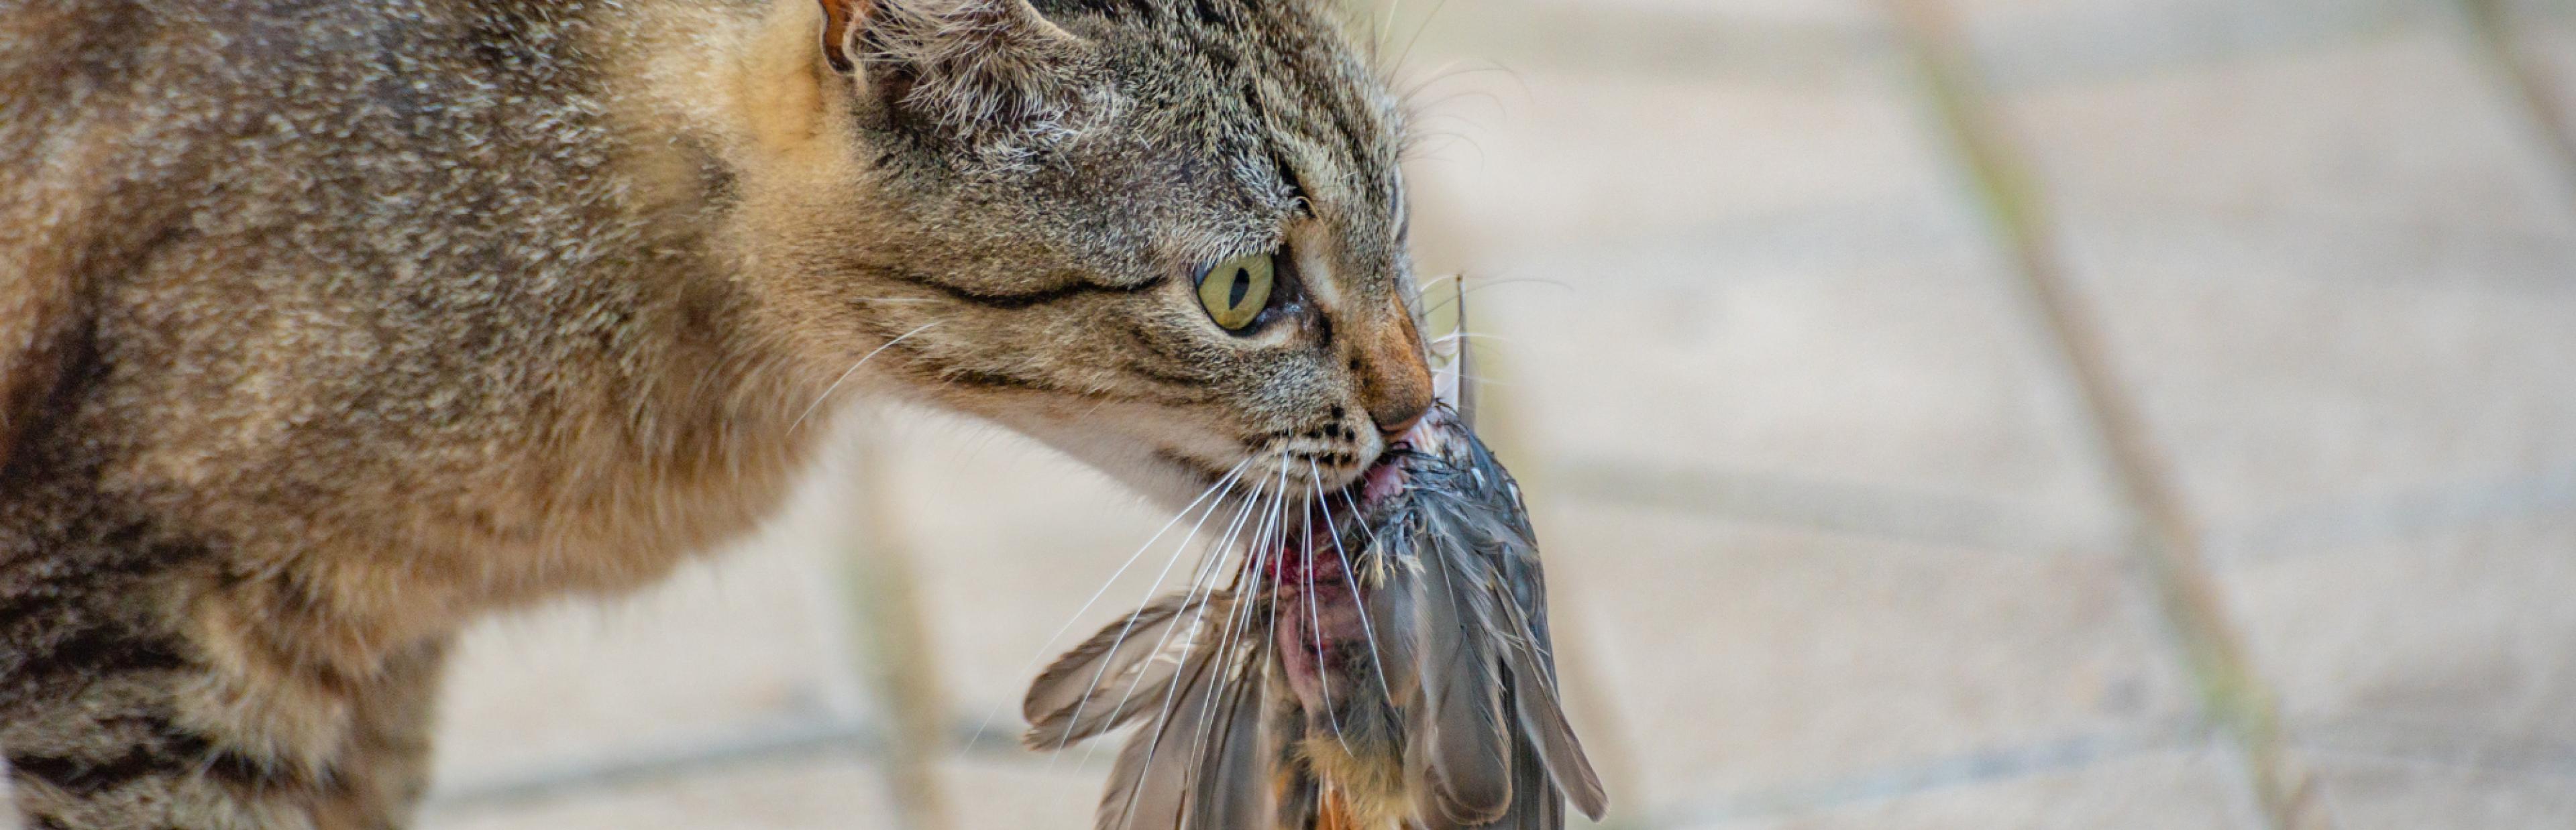 Eine Katze mit einem Rotschwanz im Maul.